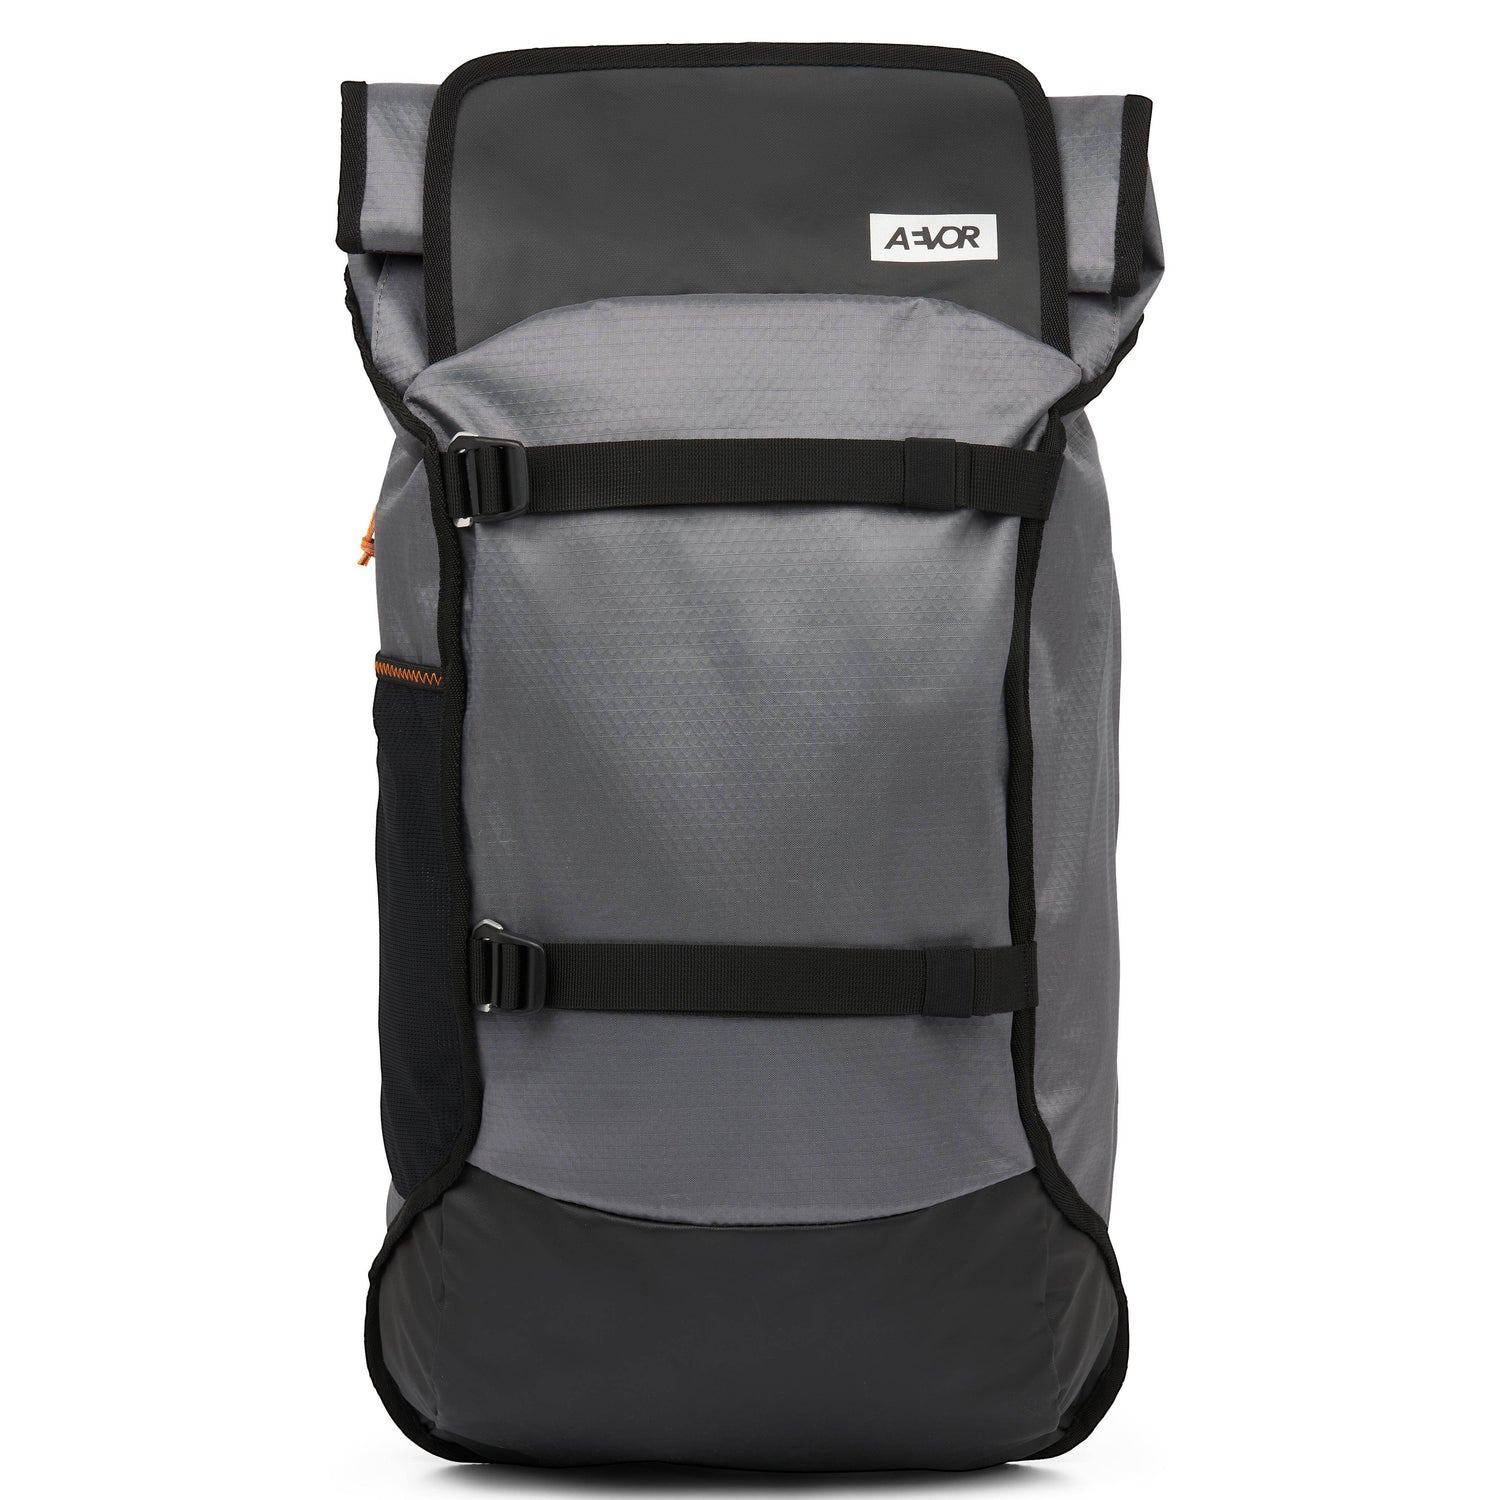 Aevor Trip Pack Proof backpack - Waterproof bag made from recycled PET-bottles Sundown Bags